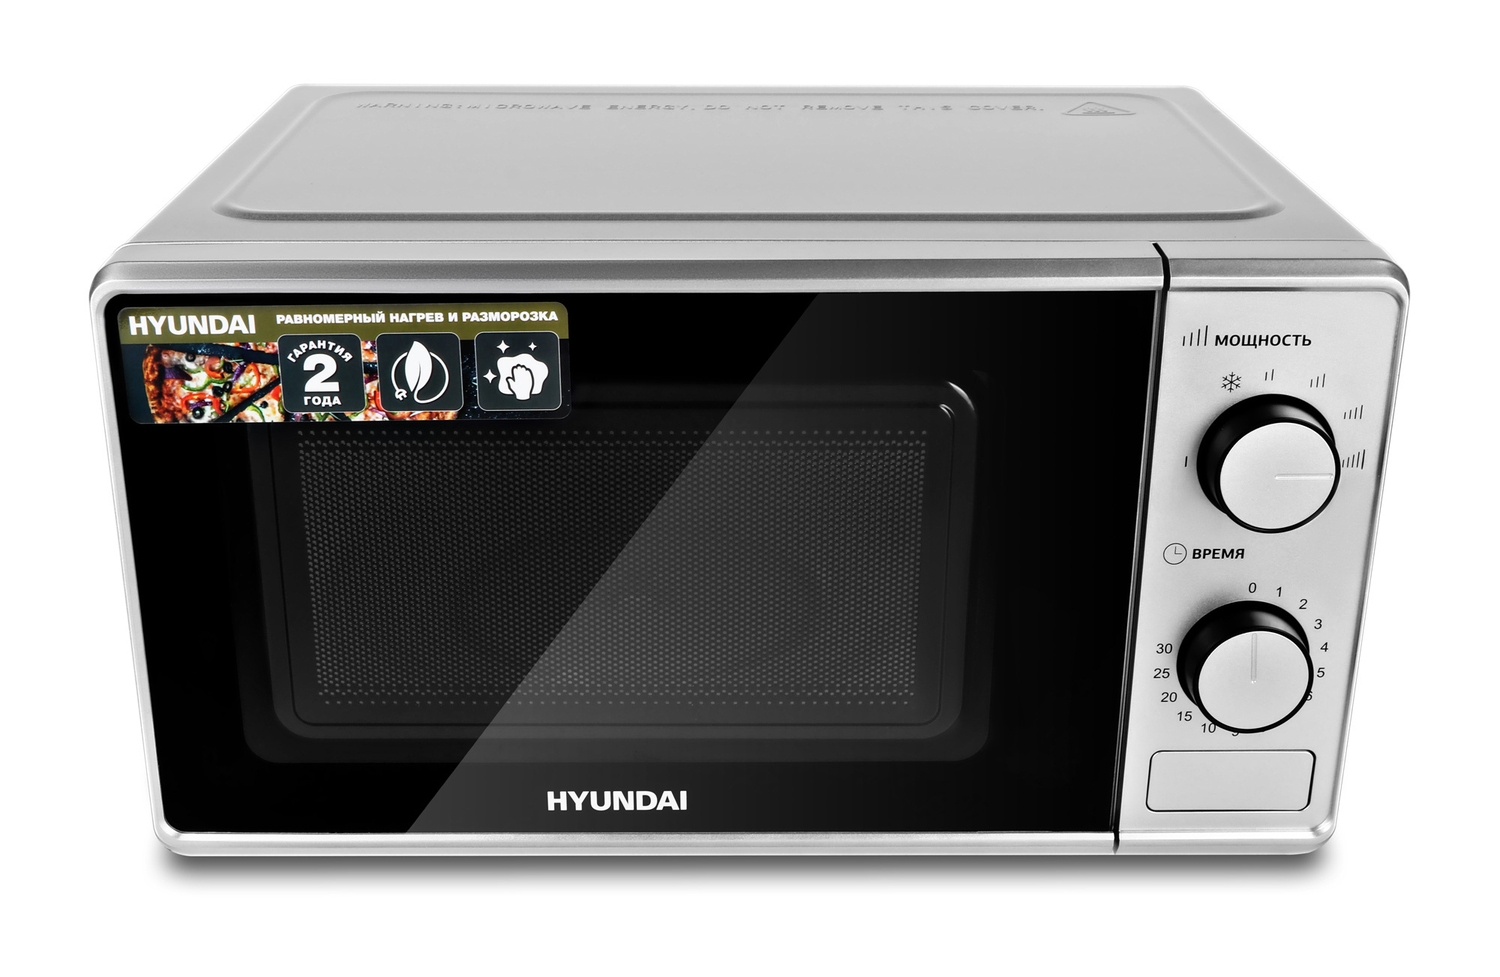 Микроволновая печь Hyundai HYM-M2042 серебристый микроволновая печь hyundai hym m2042 серебристый